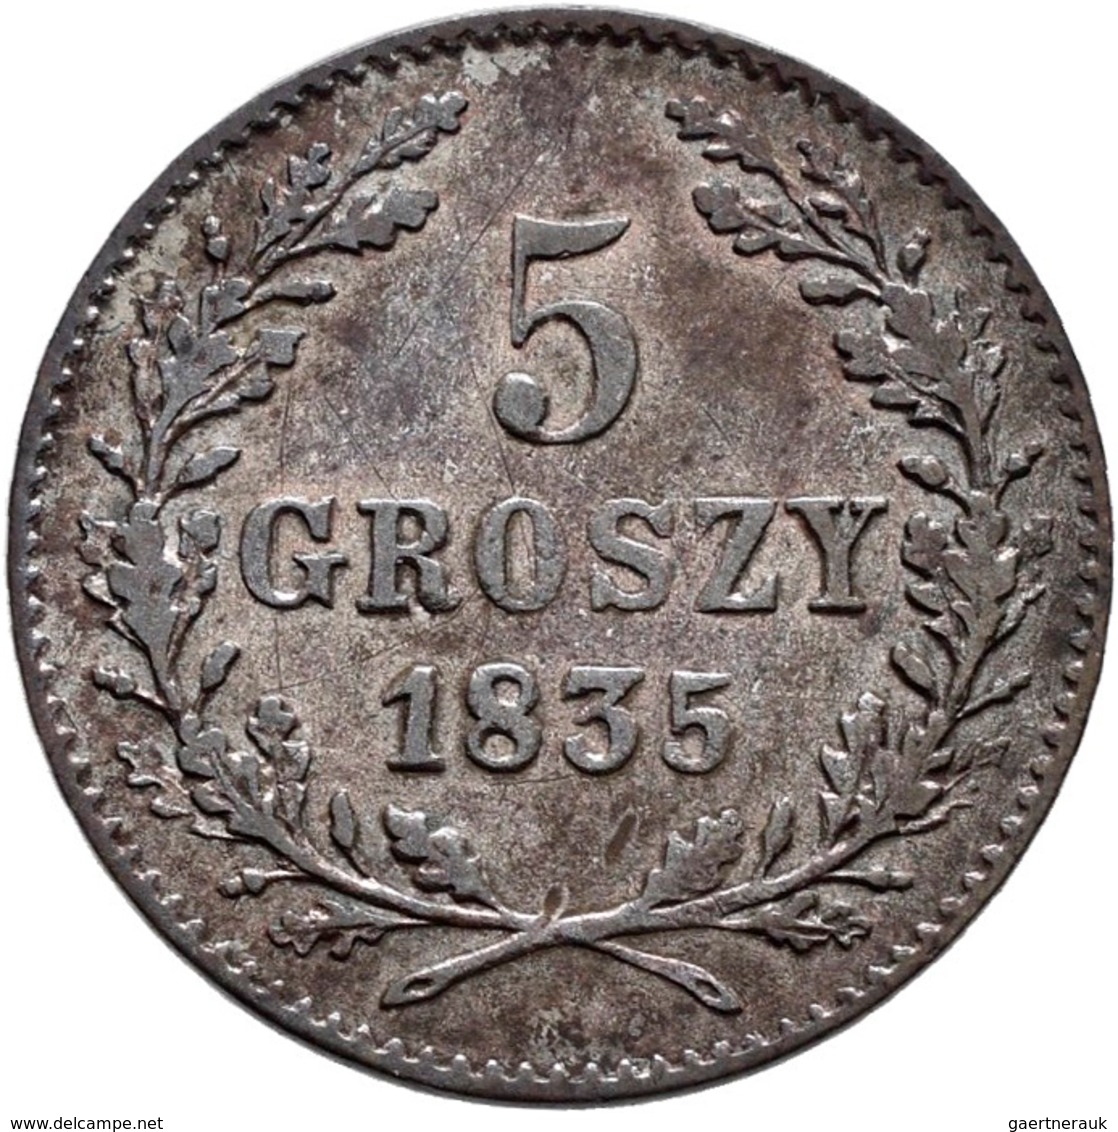 Polen: Krakau / Krakow, Freie Stadt: Lot 3 Münzen 1835: 5 Groszy, 10 Groszy, 1 Zloty. KM# C 11,12,13 - Poland